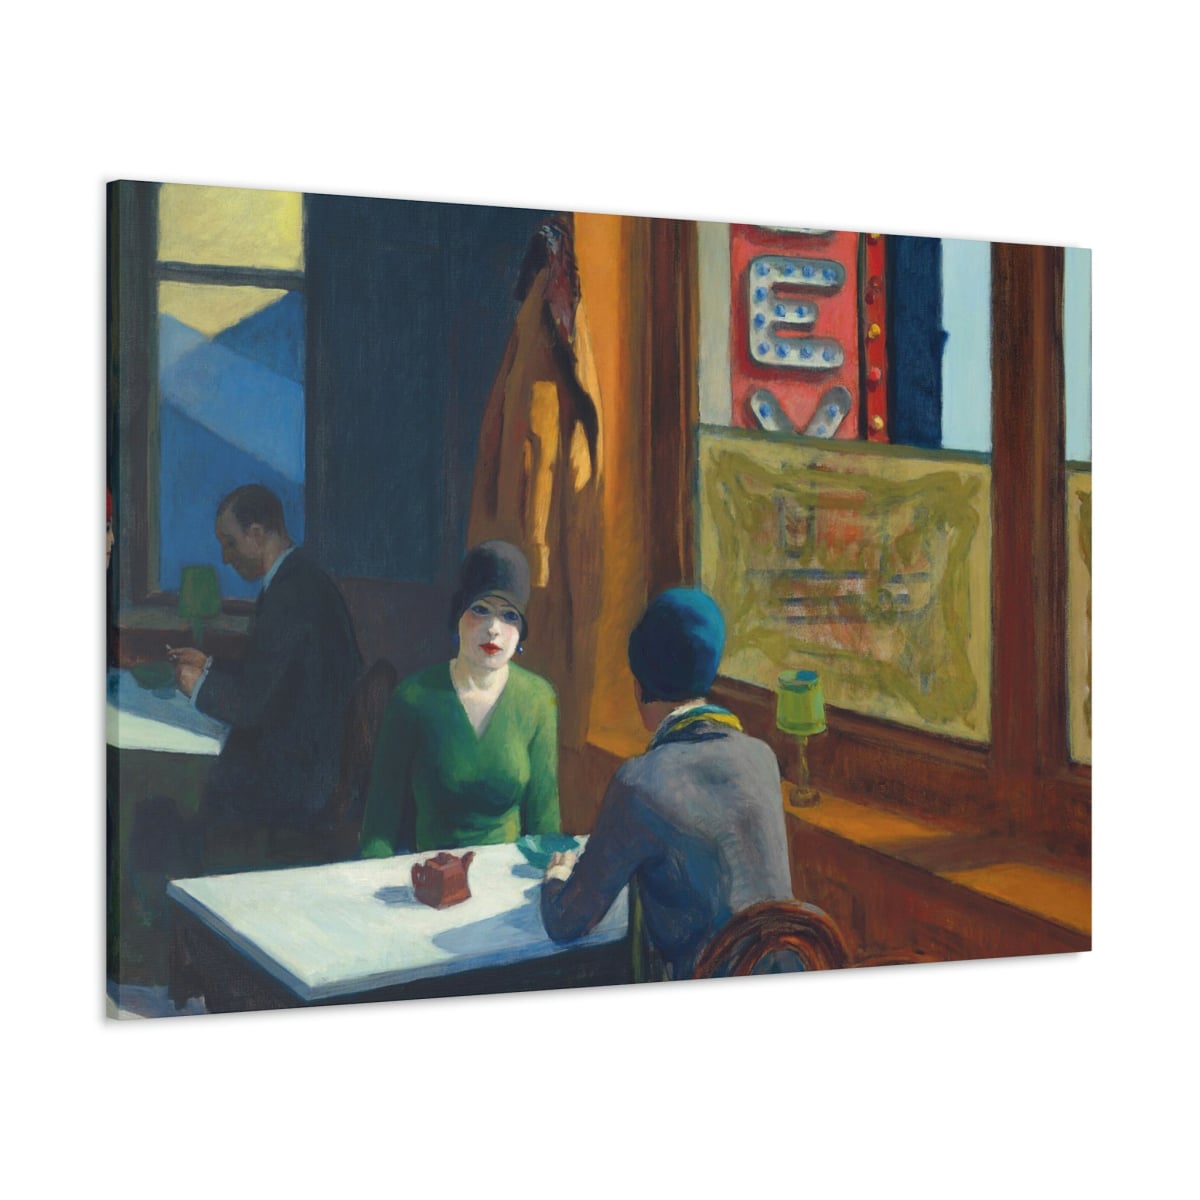 Chop Suey by Edward Hopper Art Canvas Gallery Wraps